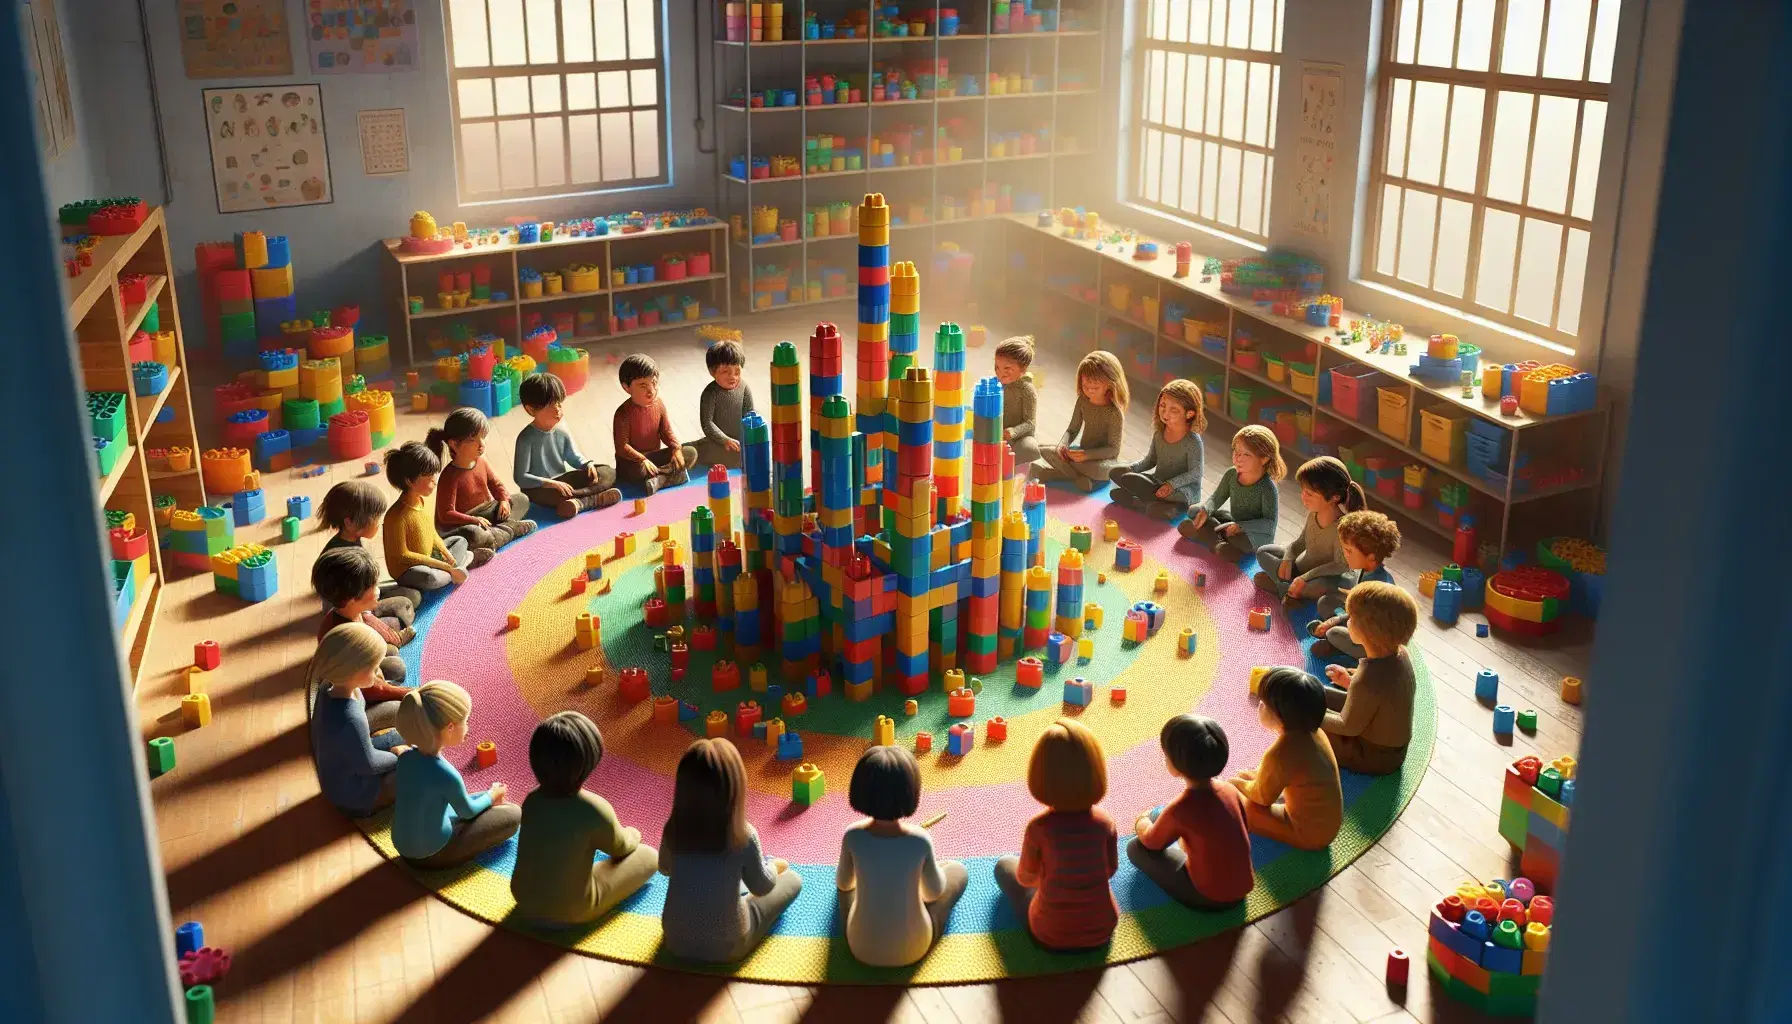 Niños de diversas edades sentados en círculo sobre alfombra colorida, jugando y construyendo con bloques de colores primarios, en una habitación iluminada naturalmente.